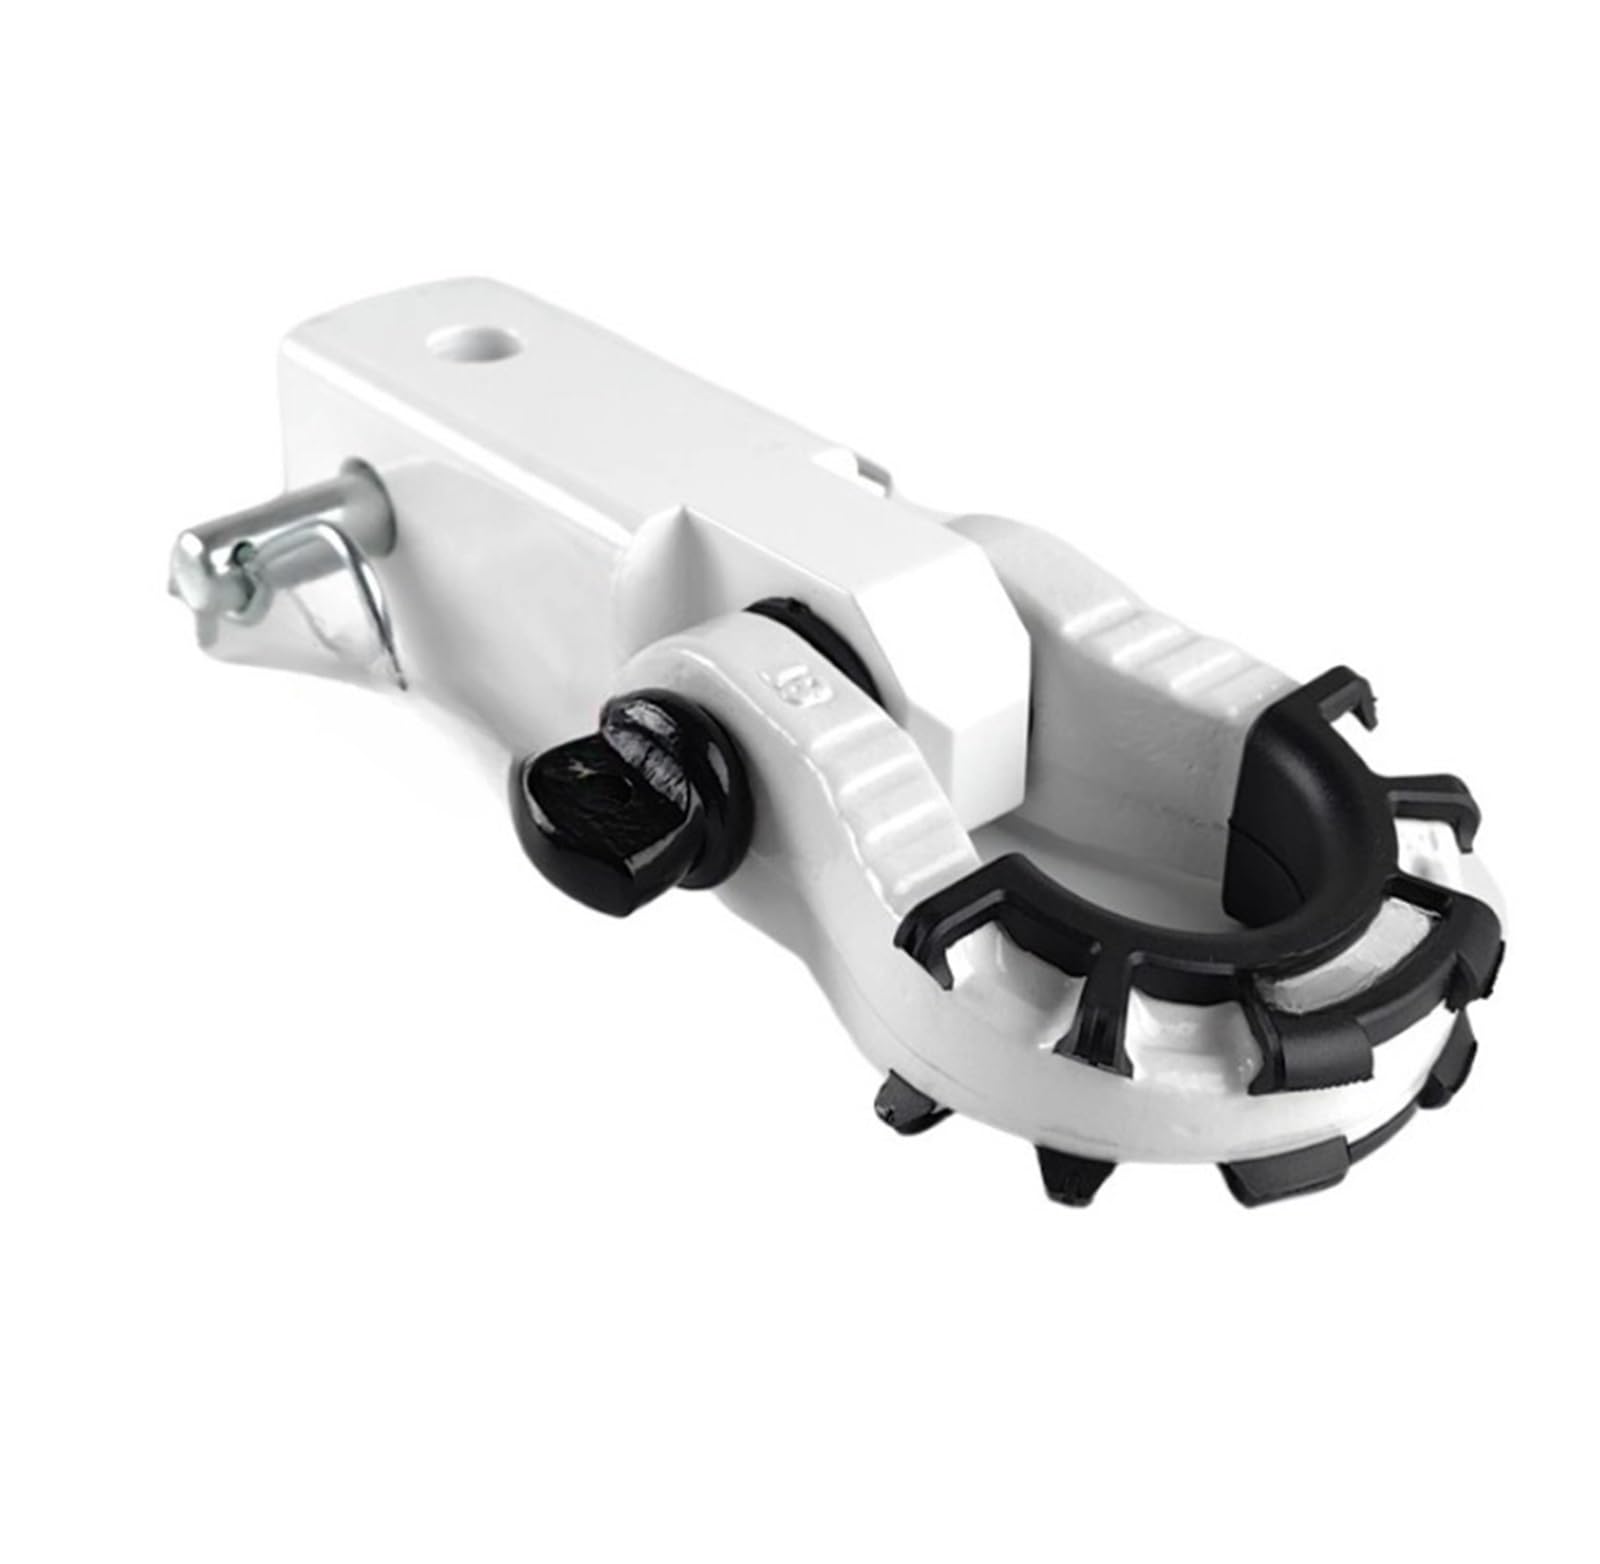 Solide Anhänger Arm Haken Platz Mund Traktion Abschleppen Stecker Kompatibel for Off Road(White) von SUCSBOQS